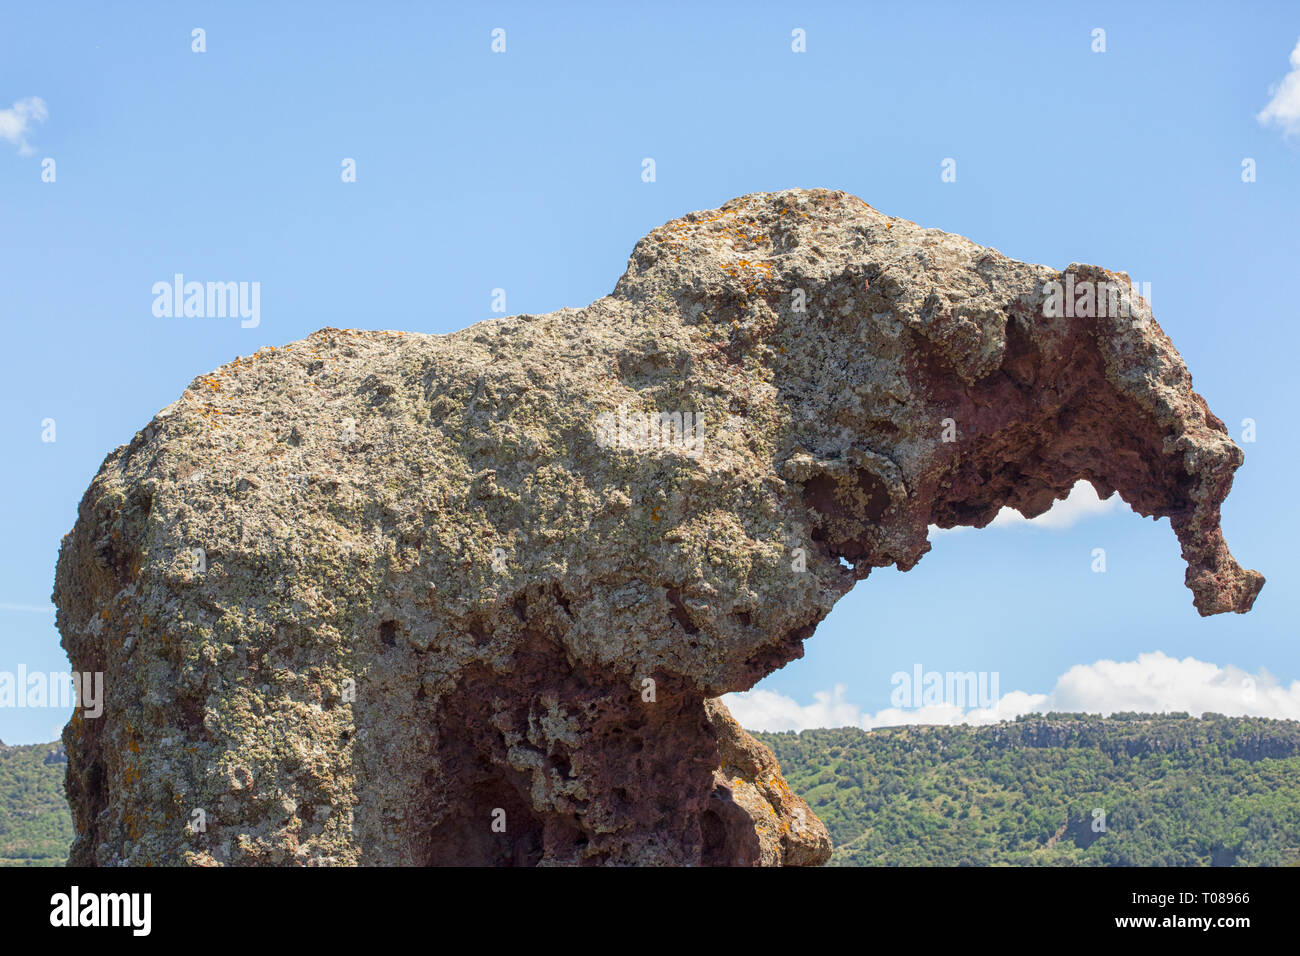 Elephant Rock, Roccia dell'Elefante, eines der Symbole von Sardinien. Castelsardo, Sardinien, Italien Stockfoto